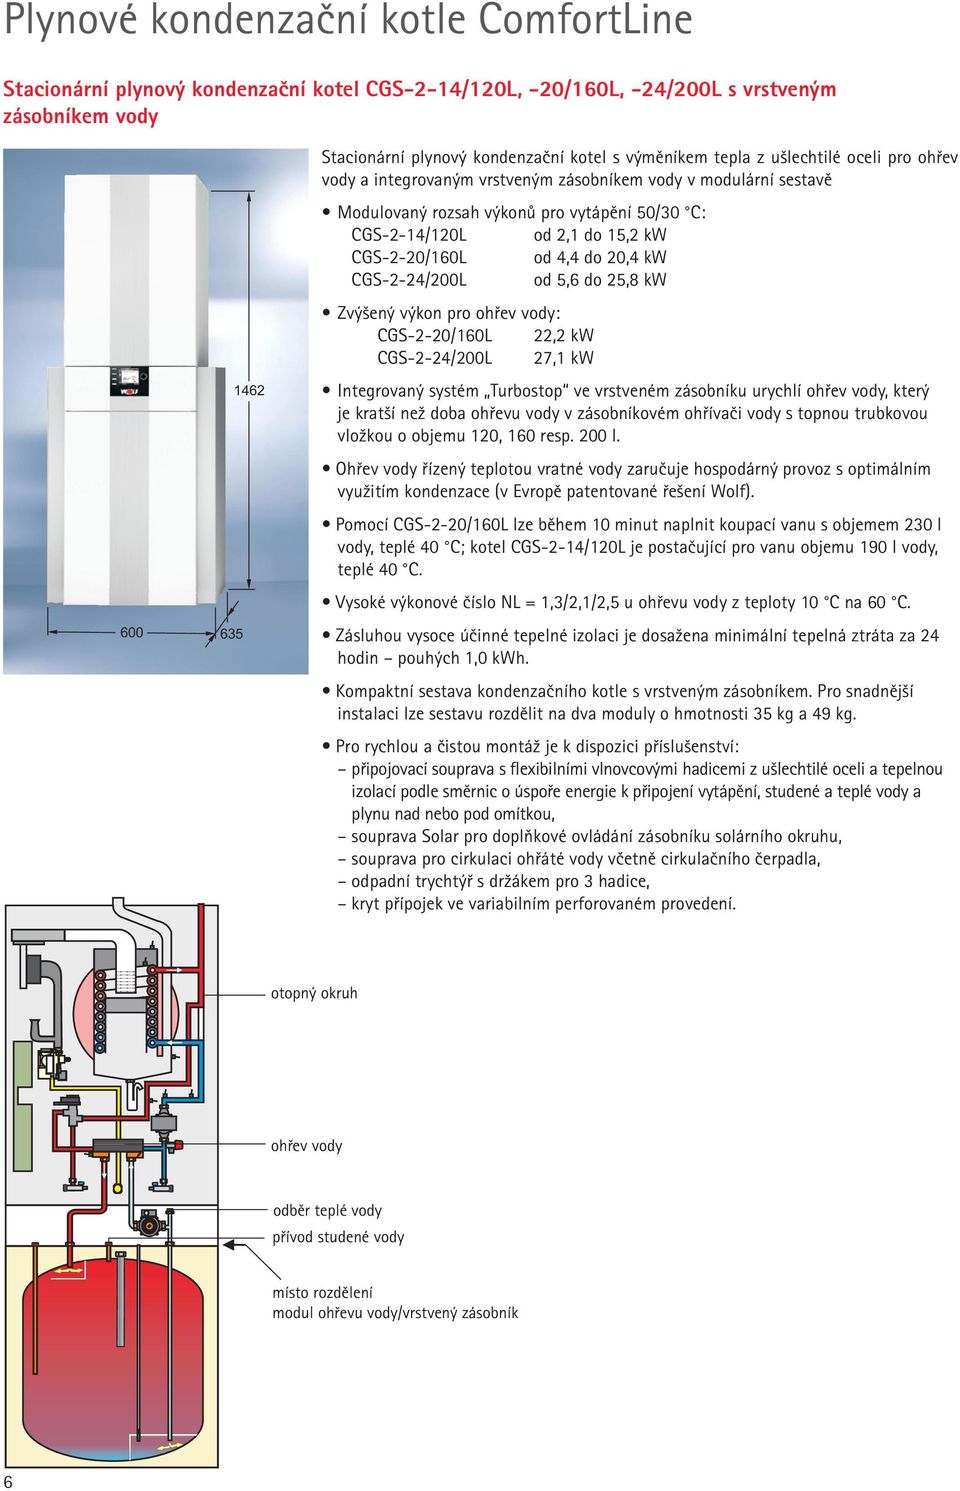 CGS-2-20/160L od 4,4 do 20,4 kw CGS-2-24/200L od 5,6 do 25,8 kw Zvýšený výkon pro ohřev vody: CGS-2-20/160L 22,2 kw CGS-2-24/200L 27,1 kw Integrovaný systém Turbostop ve vrstveném zásobníku urychlí